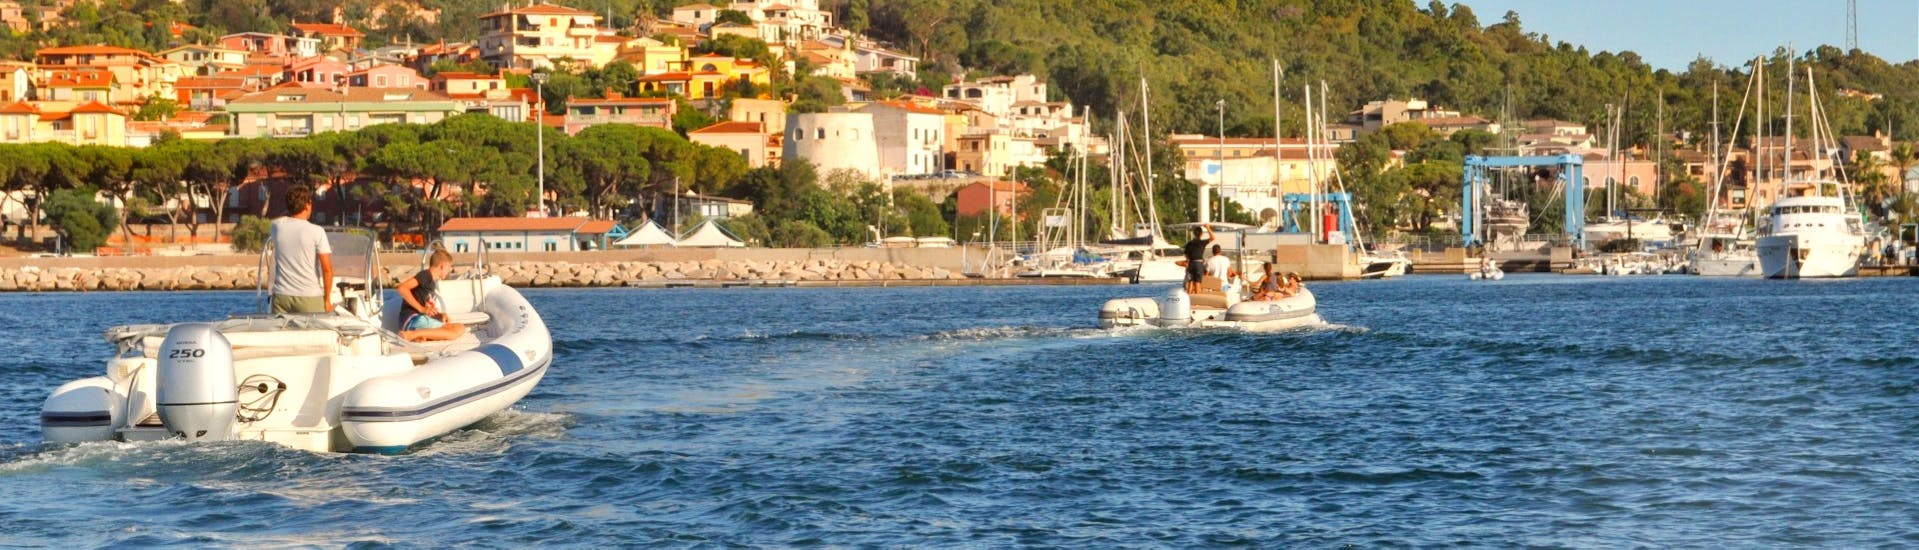 Deux bateaux semi-rigides de Velamare Arbatax naviguant devant la côte.